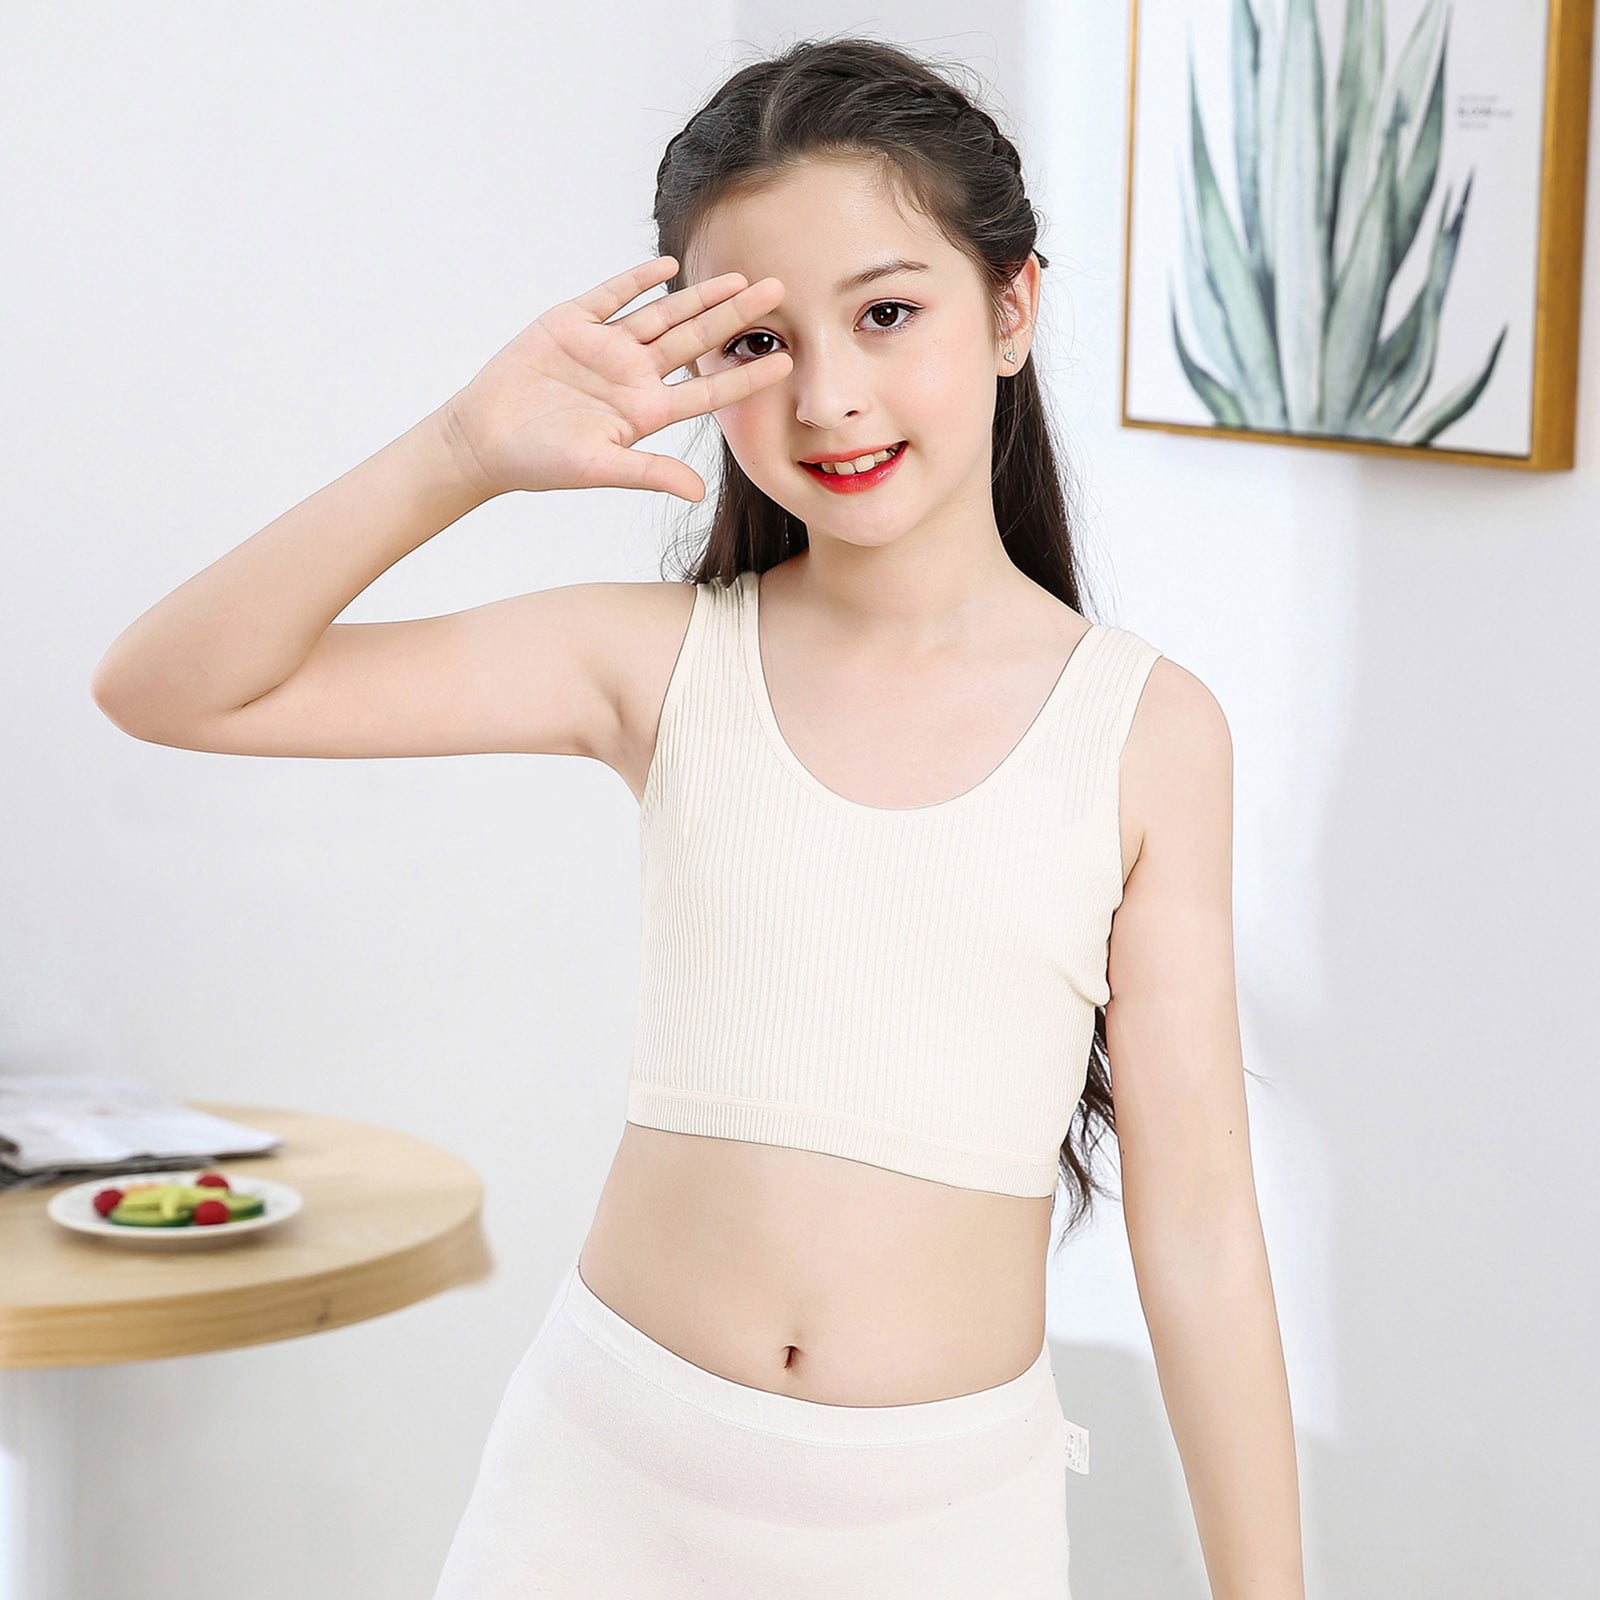 Tawop Kids Girls Underwear Cotton Bra Vest Children Underclothes